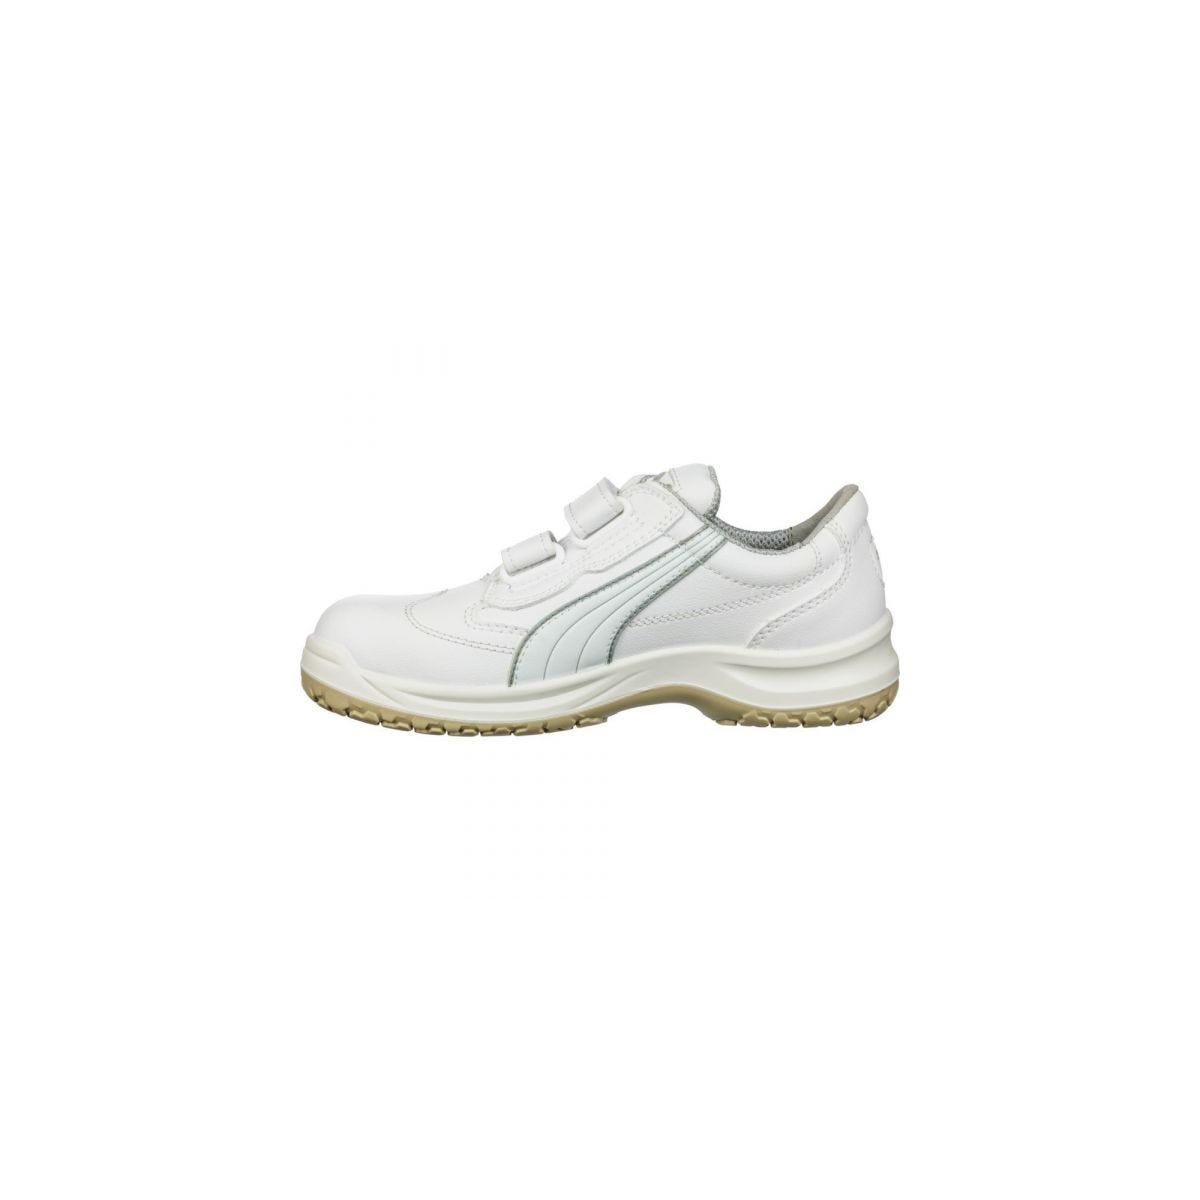 Chaussures de sécurité Absolute Low S2 Blanc - Puma - Taille 39 1